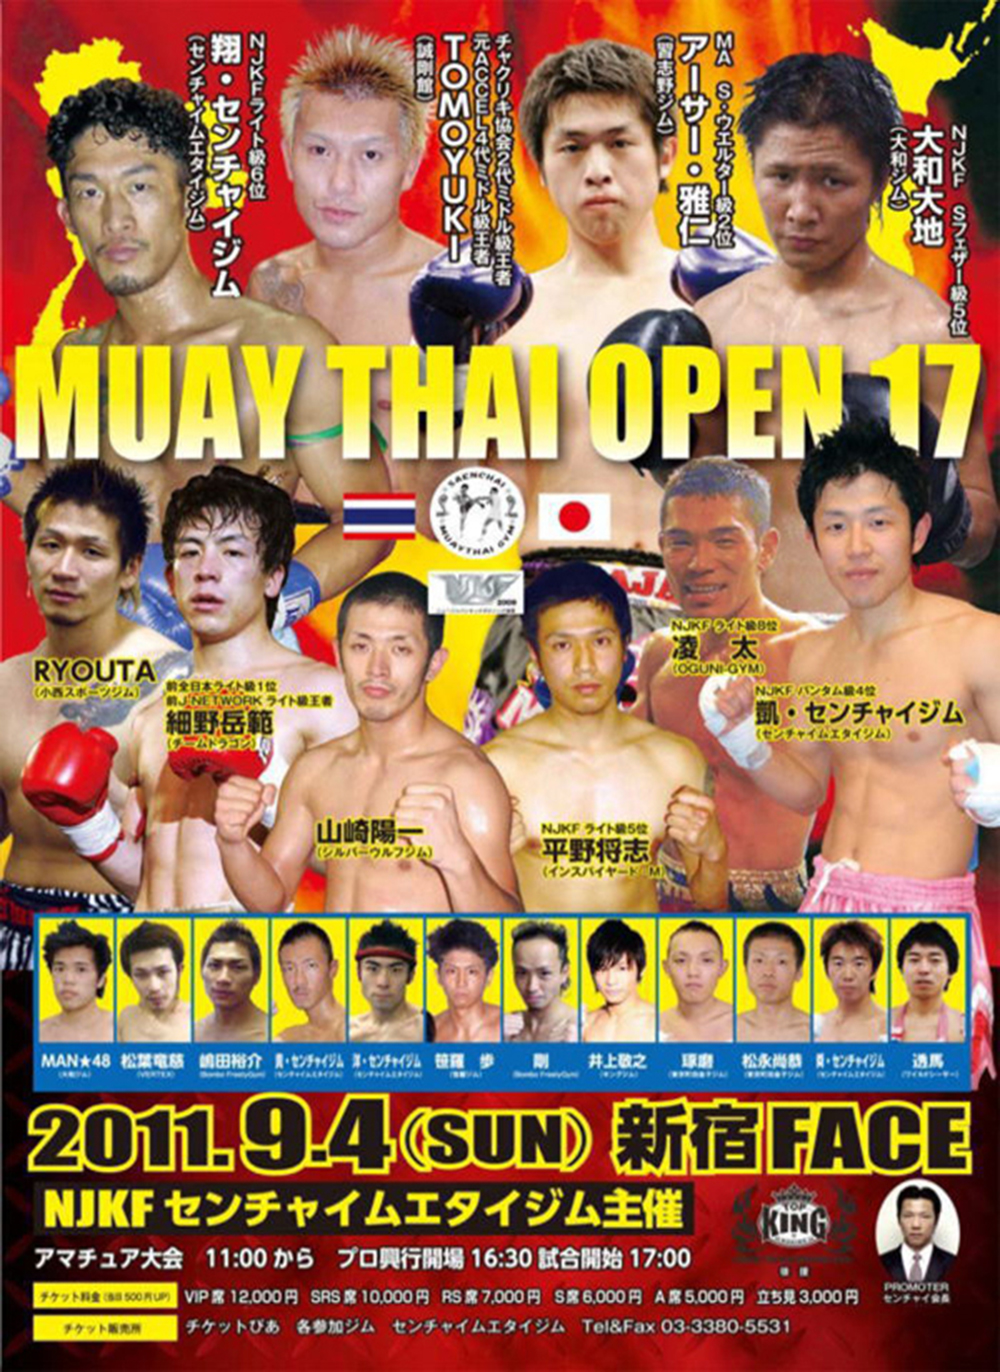 Muay Thai Open 17